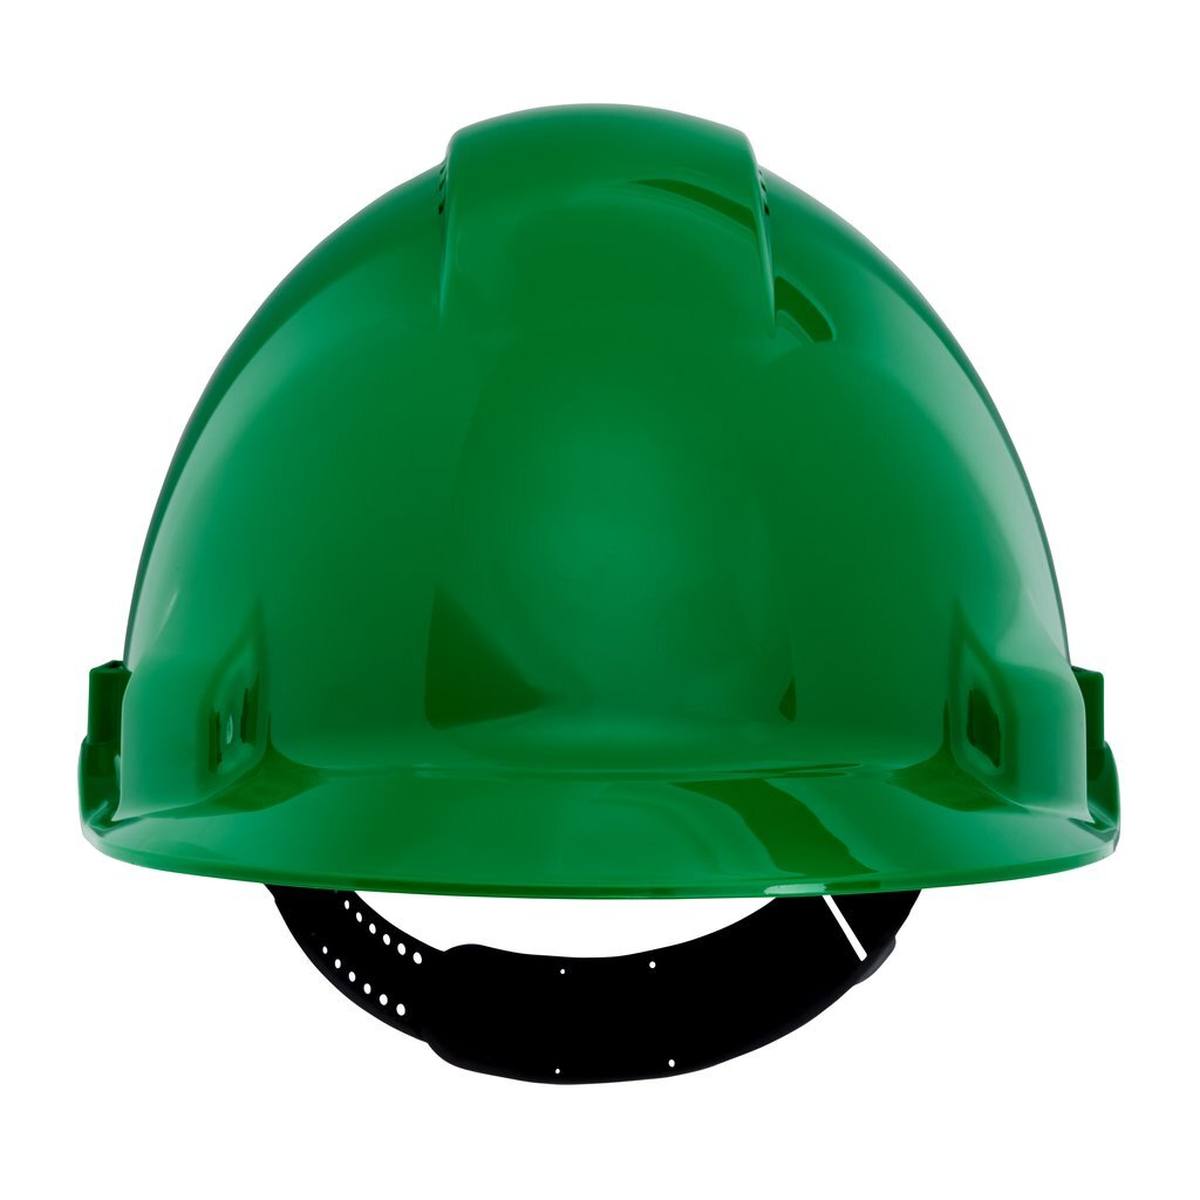 3M Casco de seguridad G3000 G30CUG de color verde, ventilado, con uvicator, pinlock y banda de sudor de plástico